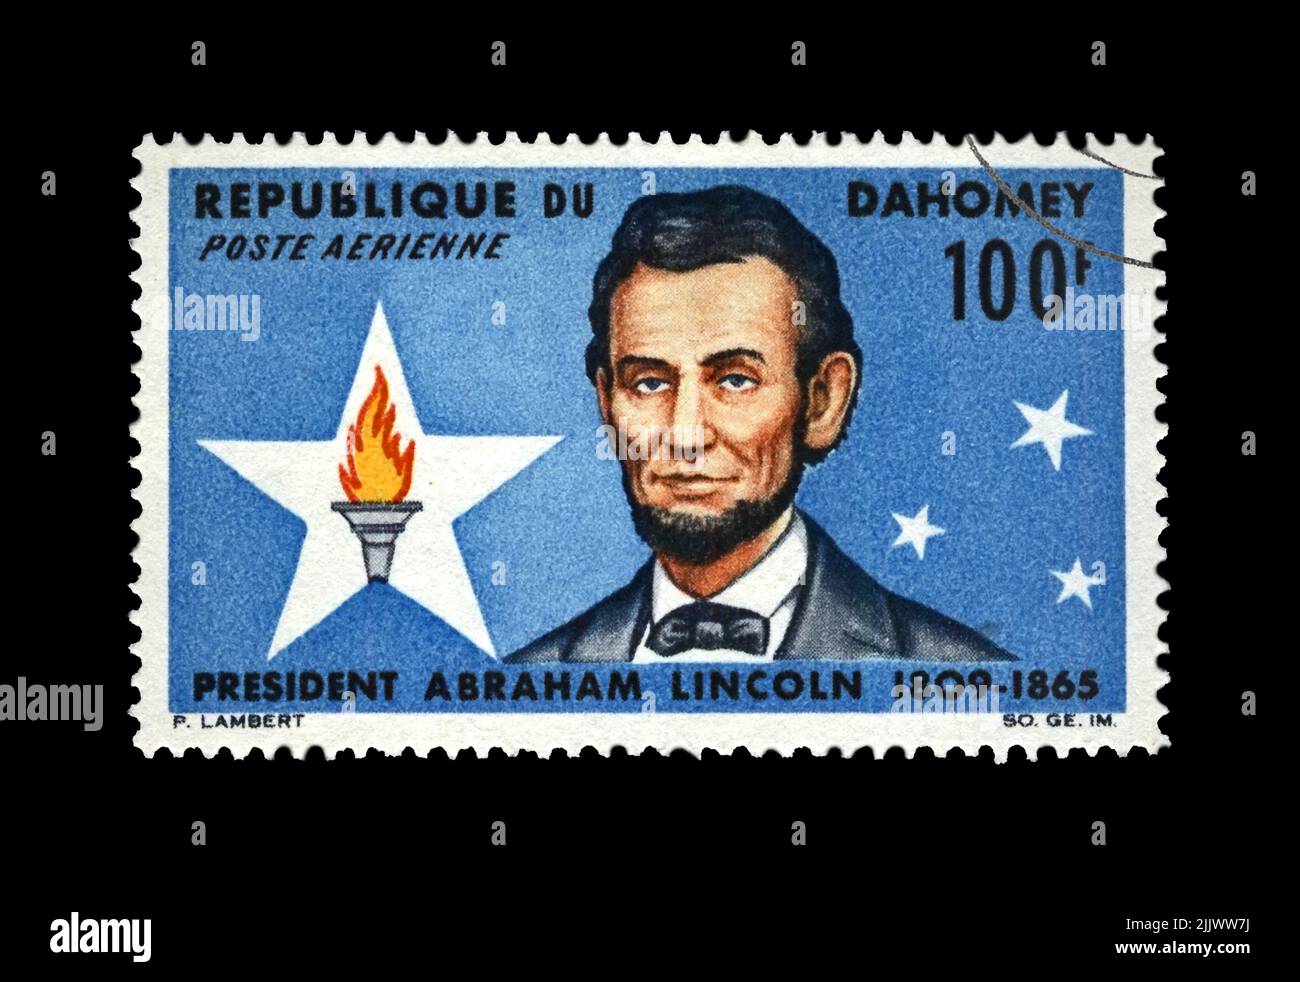 Abraham Lincoln (1809-1865), Präsident, 100. Todestag, um 1965. Vintage-Briefmarke gedruckt in Dahomey isoliert auf schwarzem Hintergrund. Stockfoto